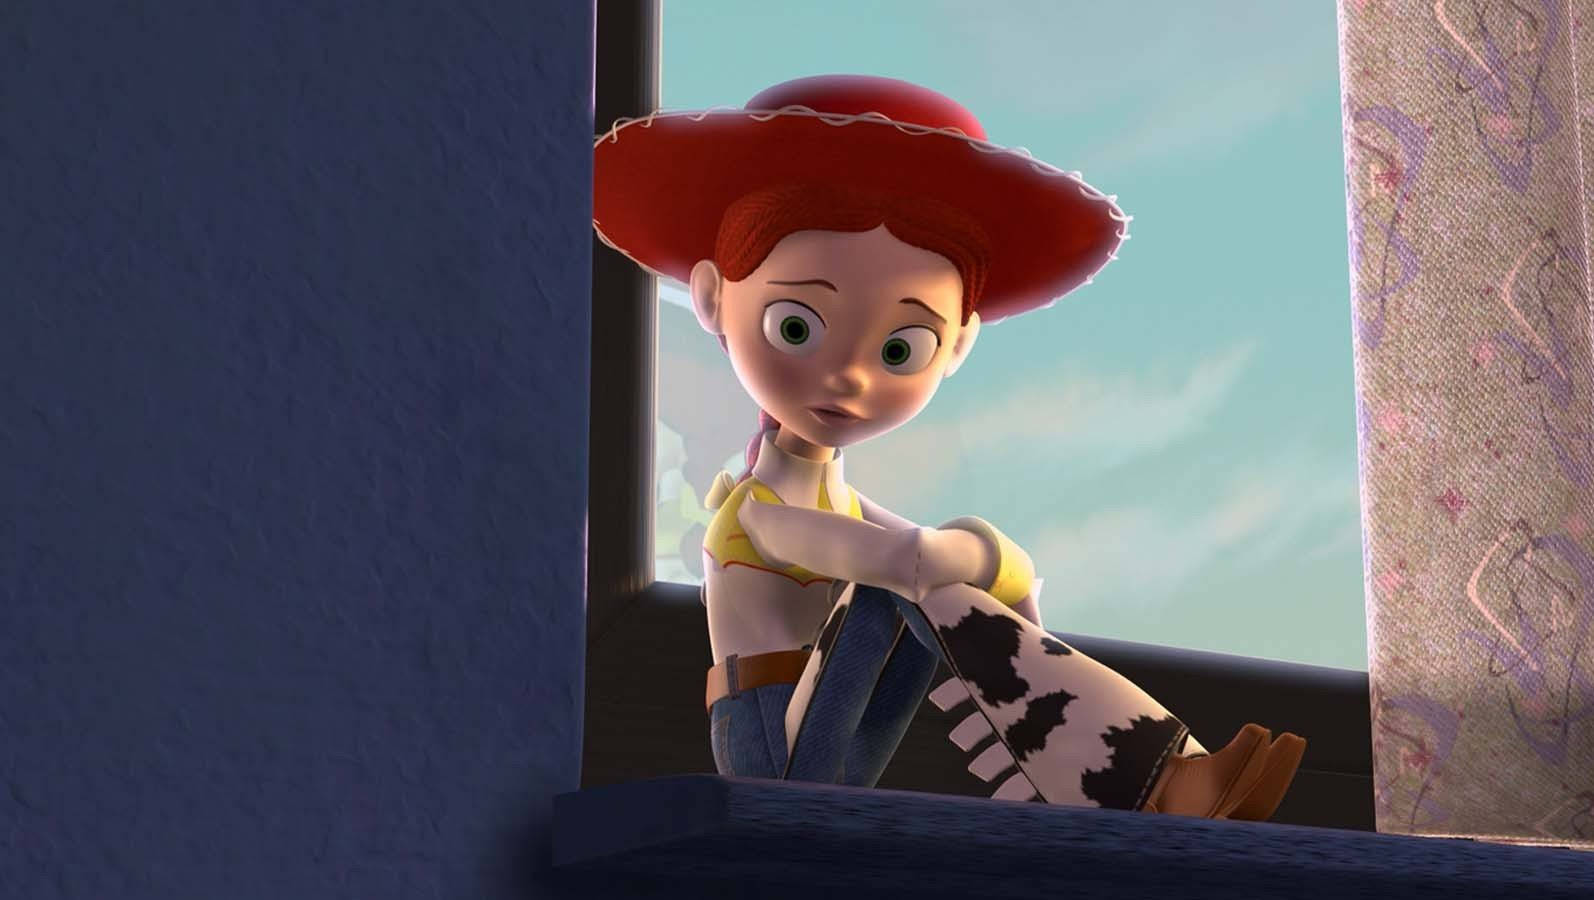 Jessie Toy Story Seated Beside Window